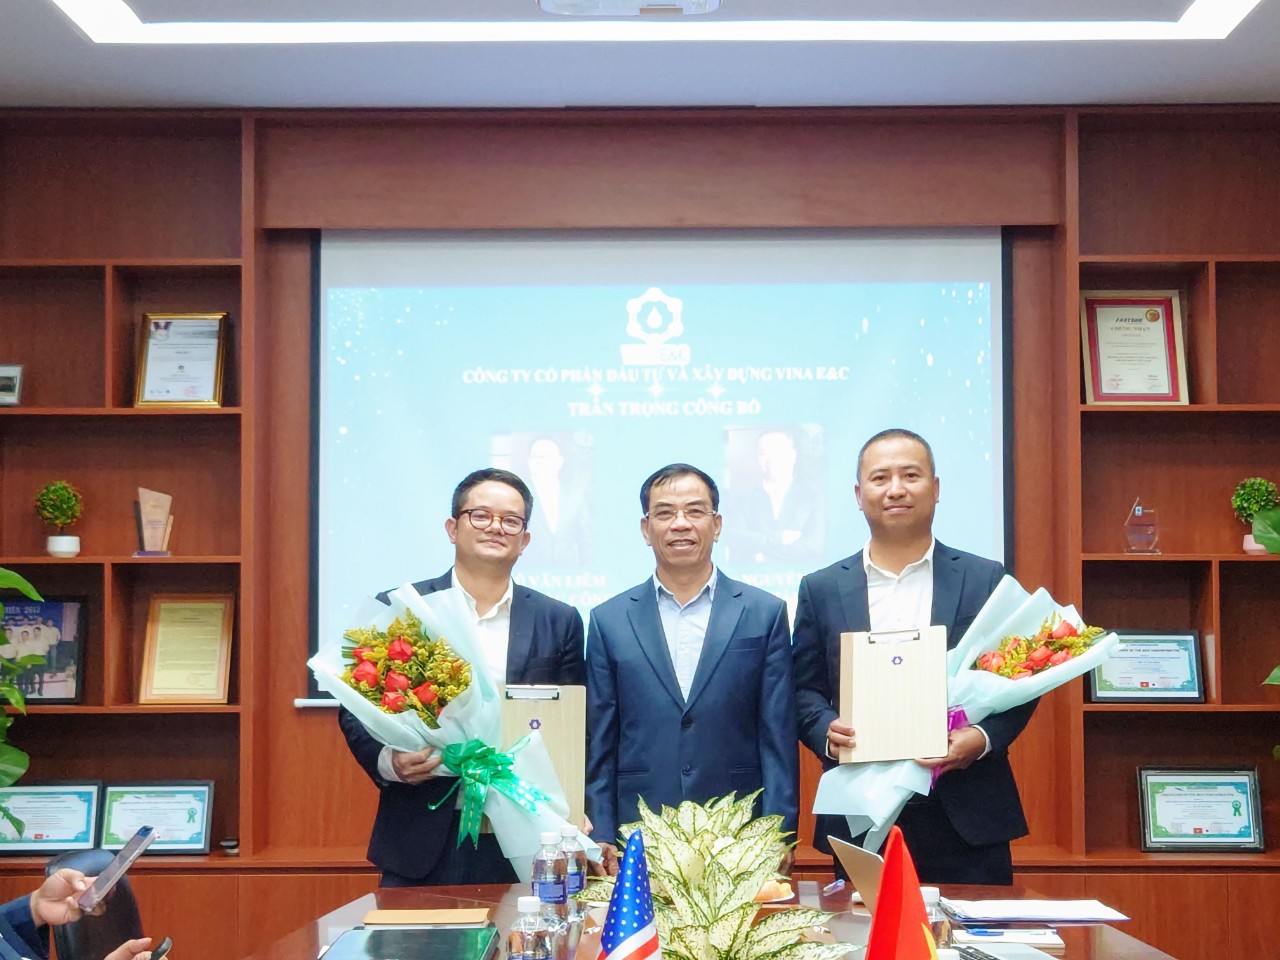 CT HĐQT Nguyễn Văn Nhượng trao Quyết Định và hoa chúc mừng Tổng Giám Đốc và Phó Tổng Giám Đốc